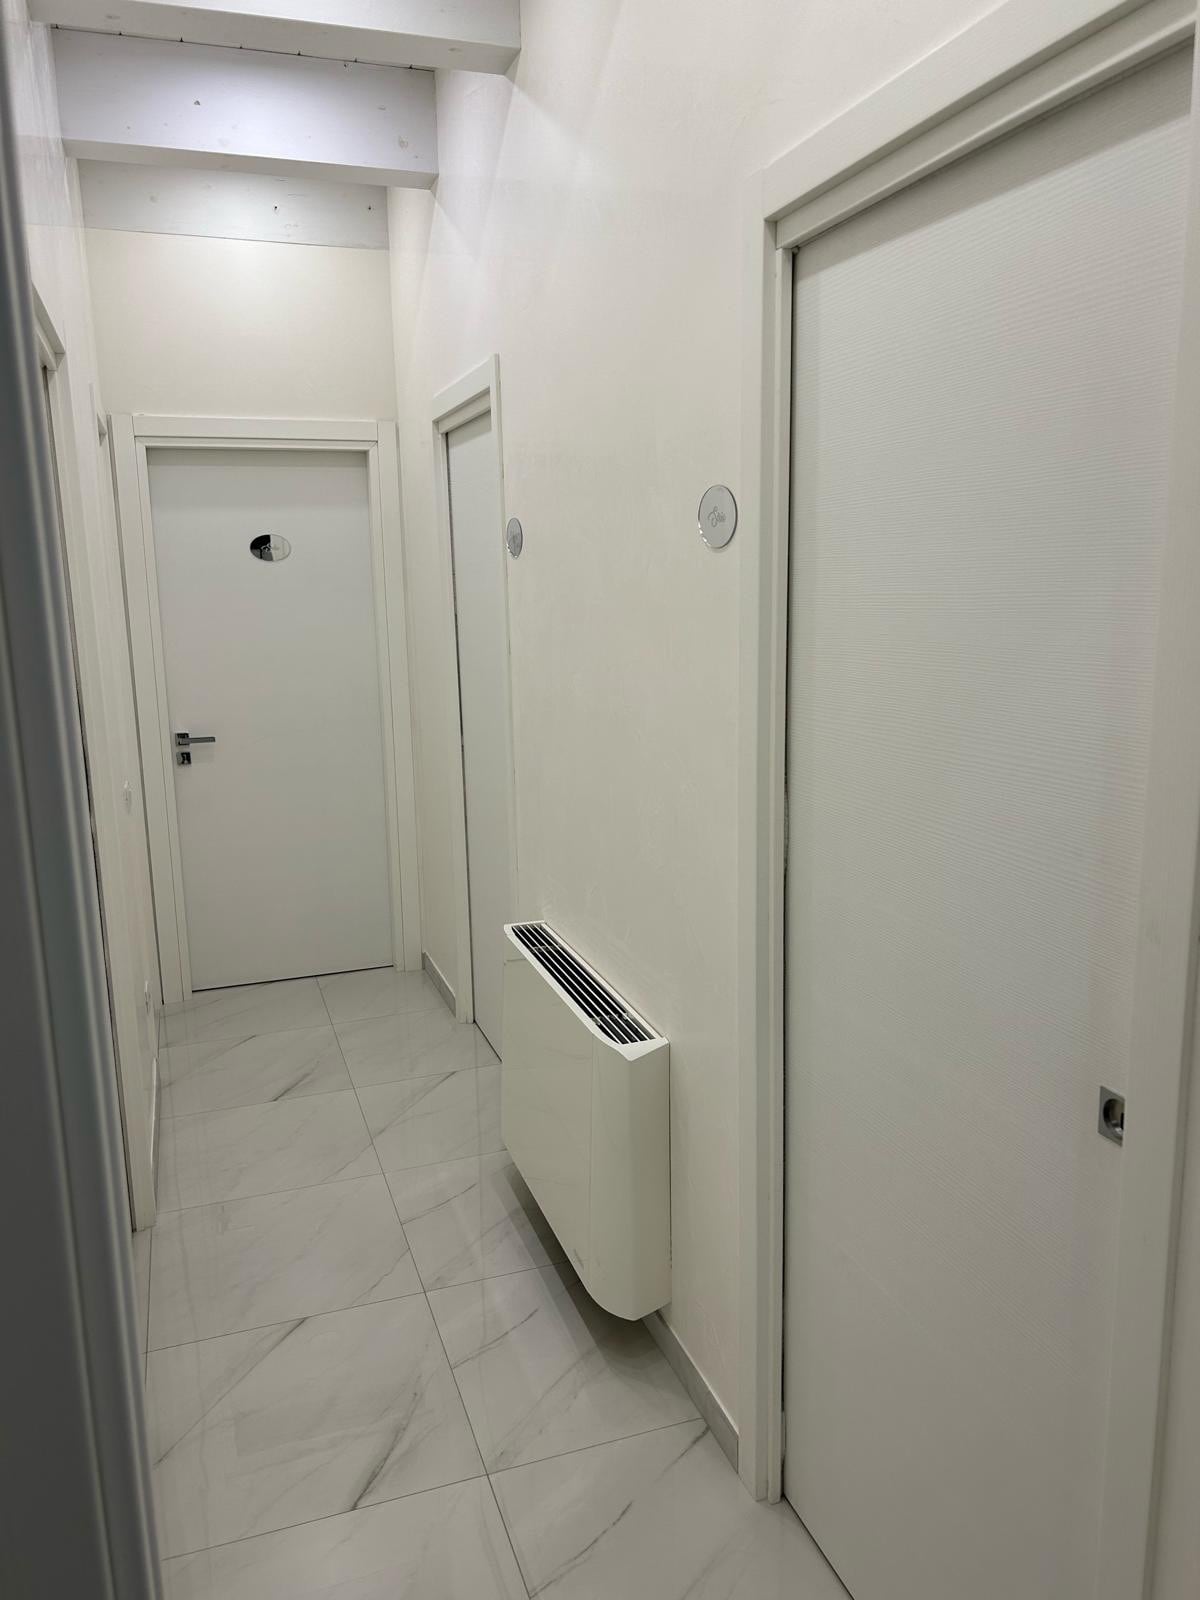 Camera singola Sirio con bagno condiviso.